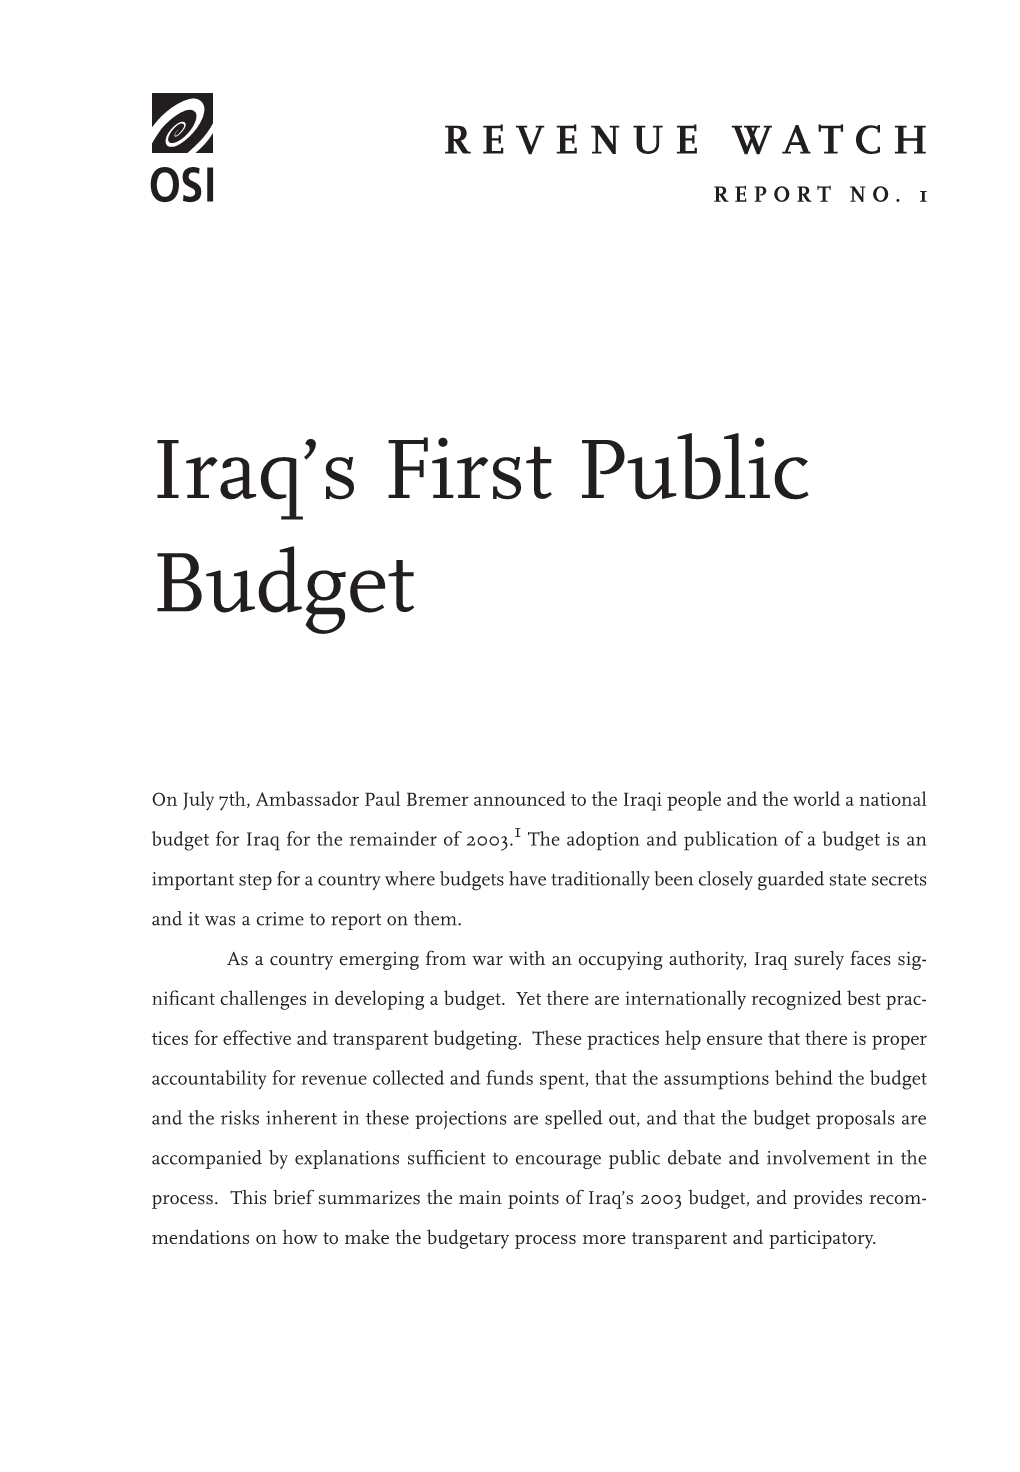 Iraq's First Public Budget